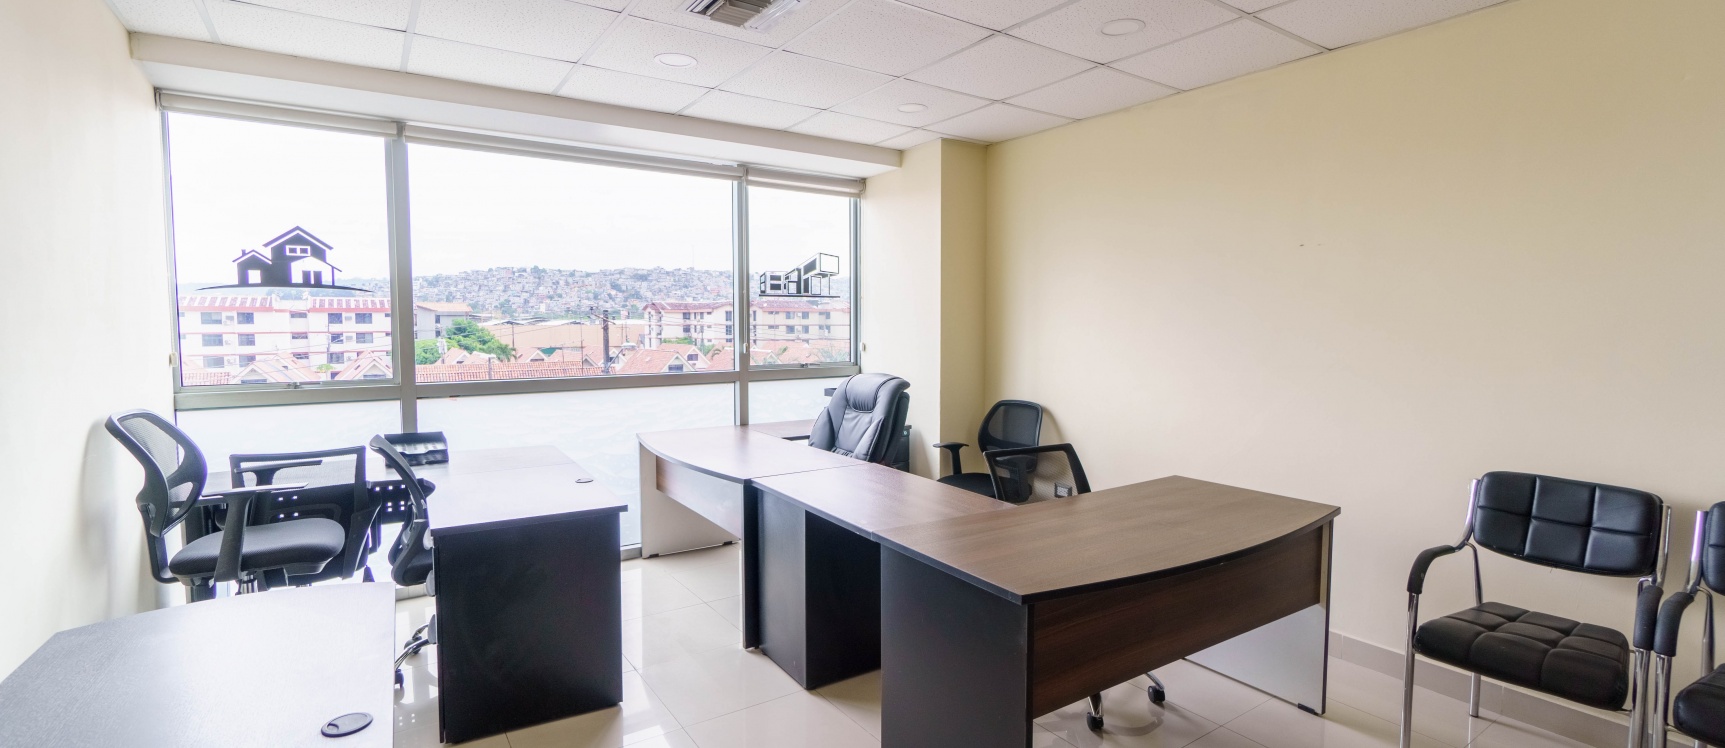 GeoBienes - Oficina en venta ubicada en Edificio City Office, Norte de Guayaquil - Plusvalia Guayaquil Casas de venta y alquiler Inmobiliaria Ecuador